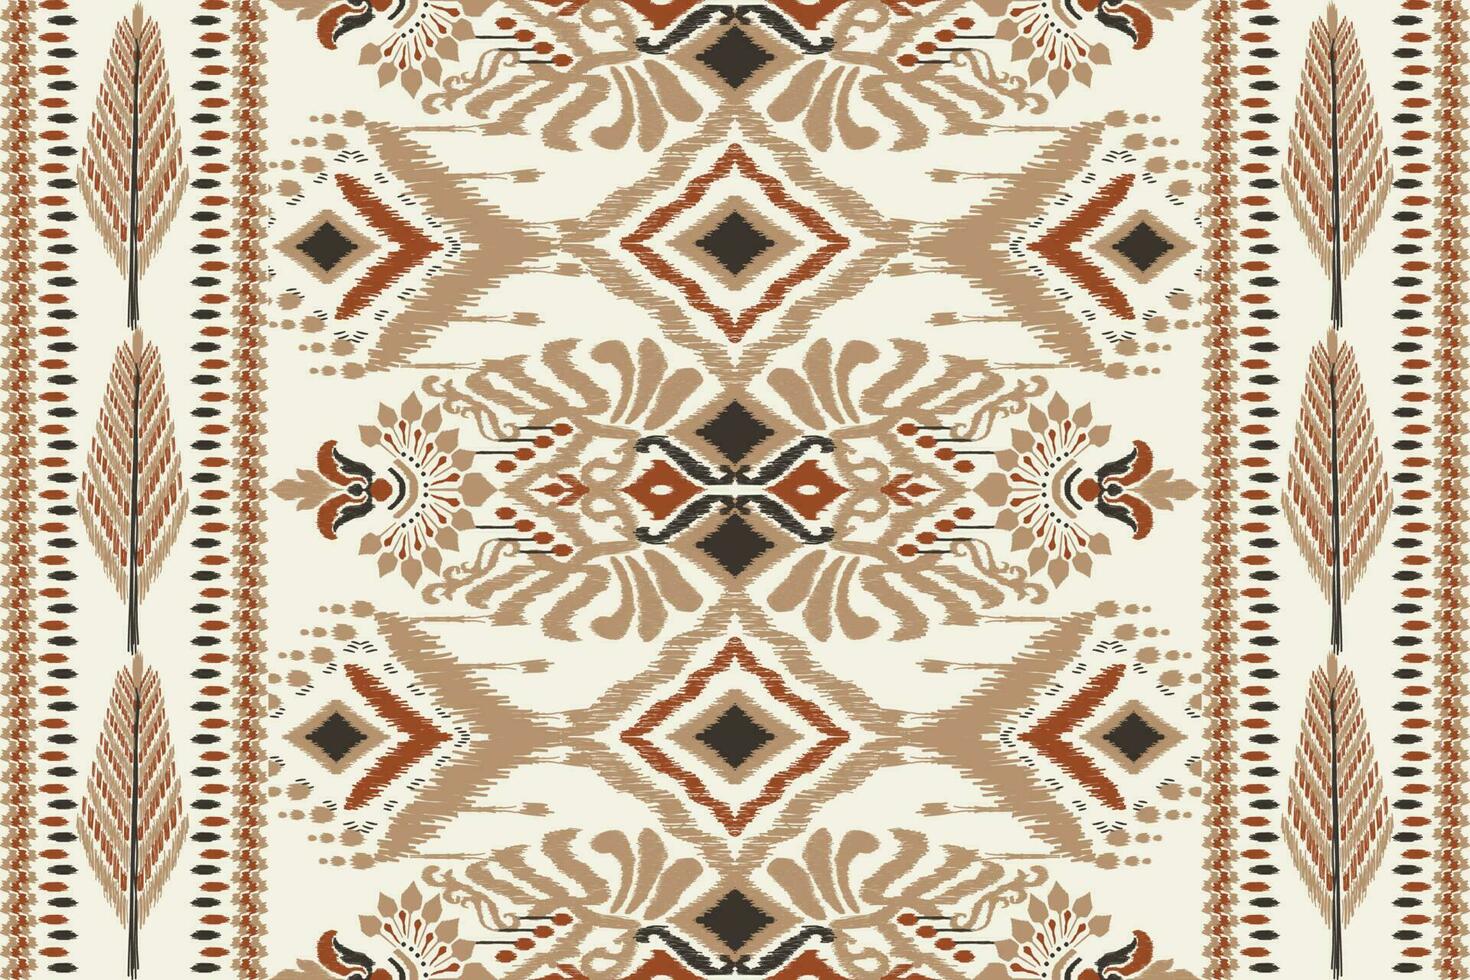 ikat blommig paisley broderi på vit bakgrund.ikat etnisk orientalisk mönster traditionell.aztec stil abstrakt vektor illustration.design för textur, tyg, kläder, inslagning, dekoration, halsduk, matta